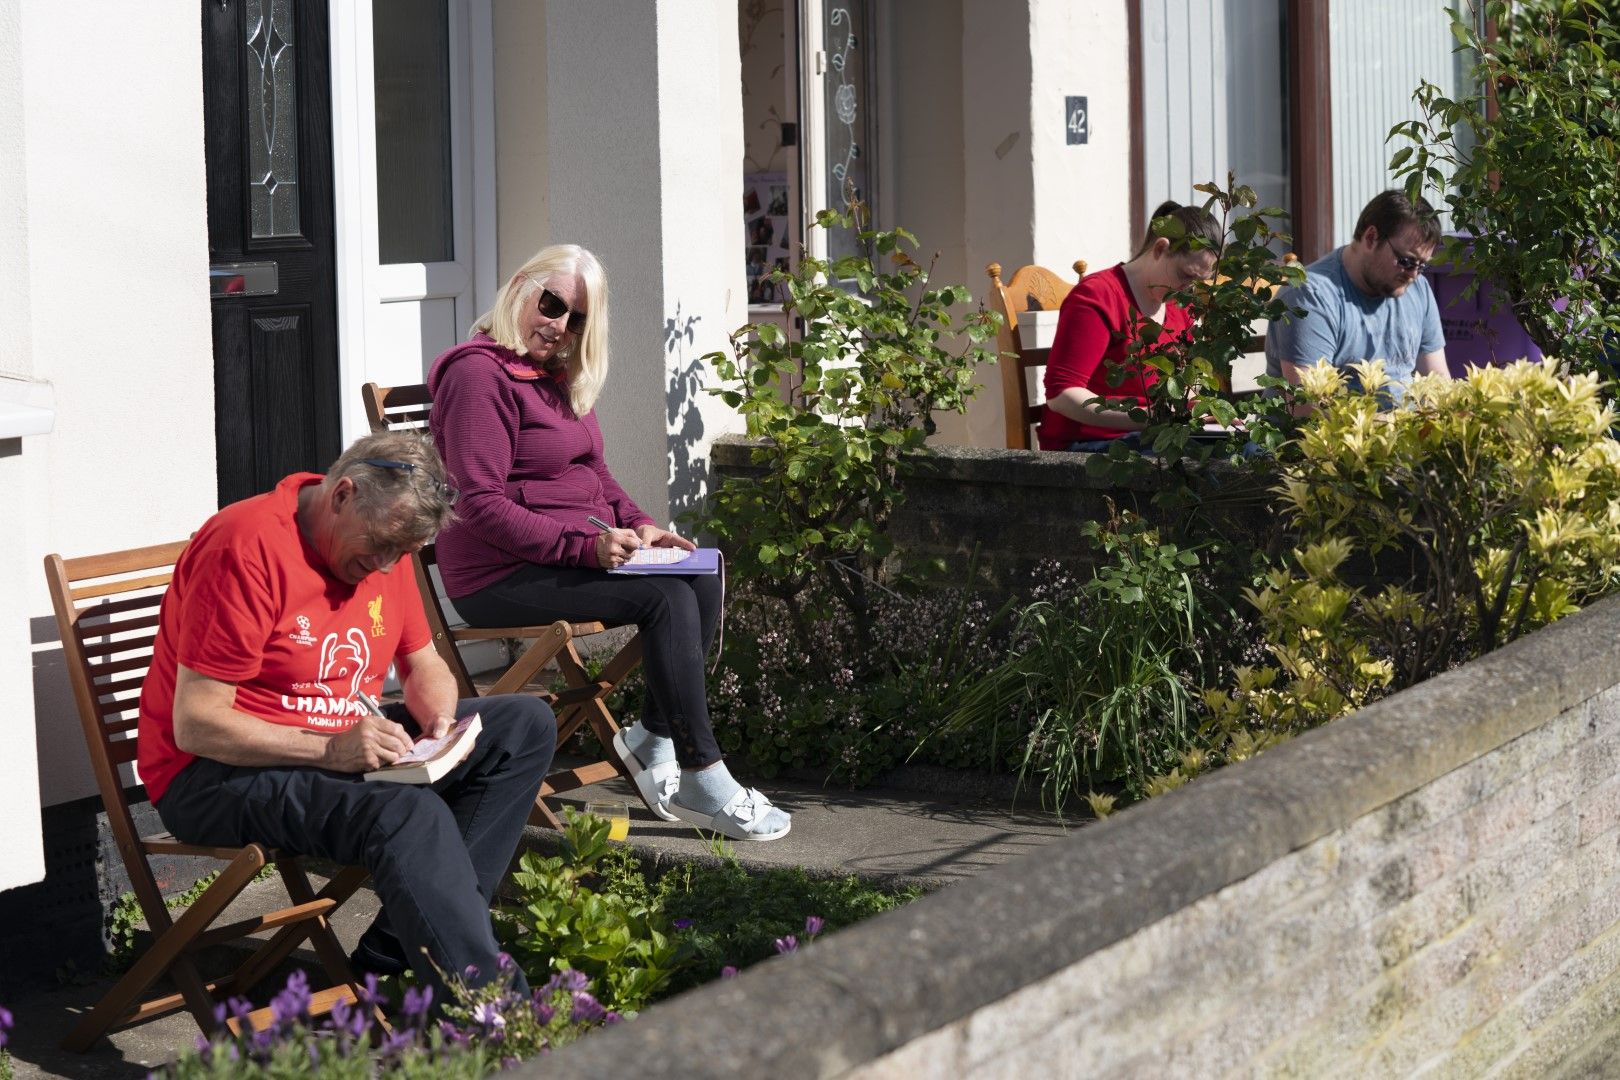 Жители на Ливърпул се забавляват с организирана игра на бинго от терасите си, спазвайки социална дистанция